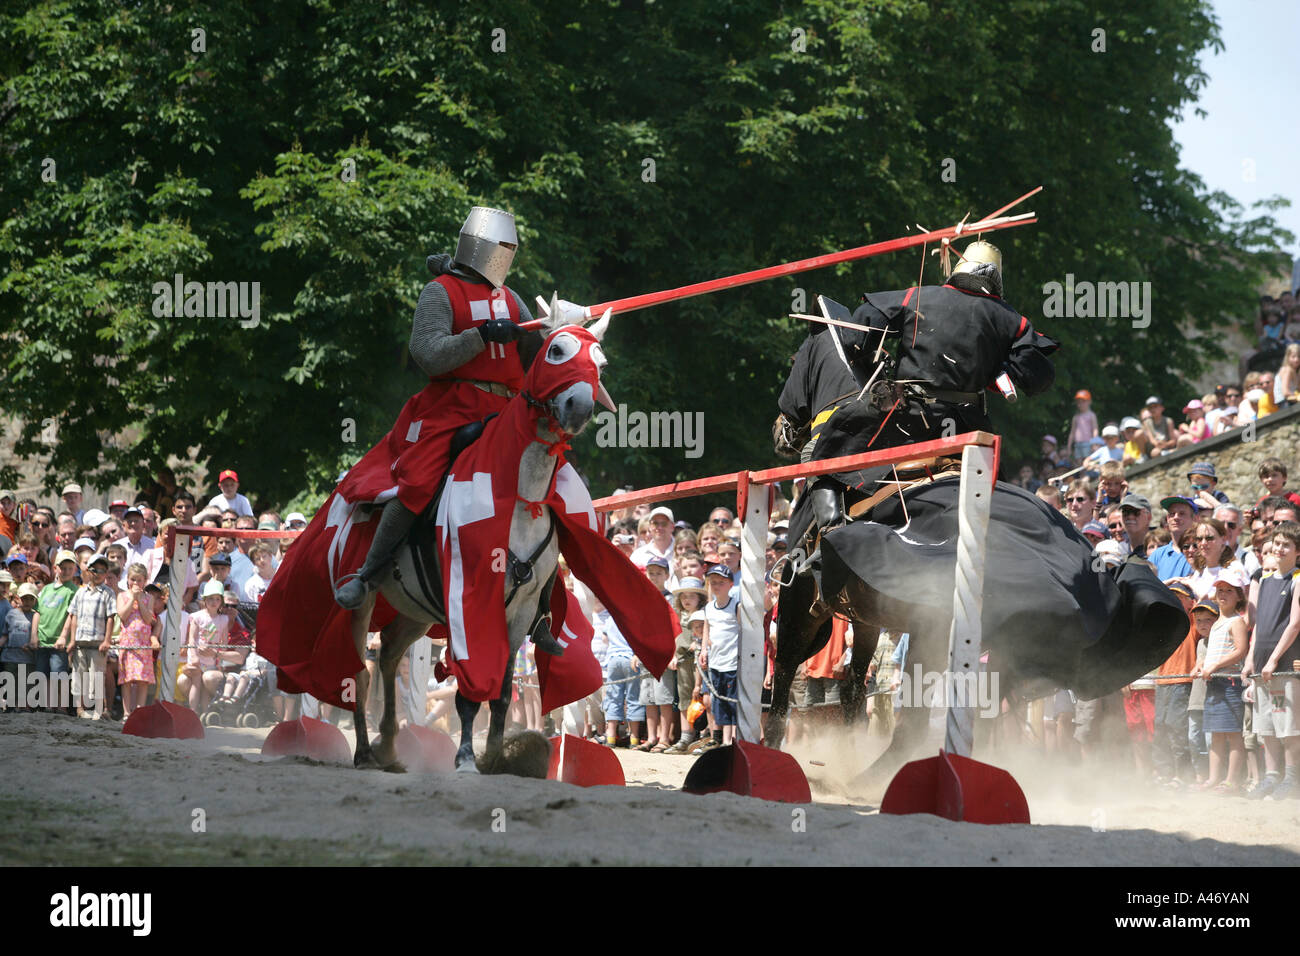 Zwei Ritter zu Pferde kämpfen mit Lanzen bei einer Show auf der Festung Ehrenbreitstein bei Koblenz, Rheinland-Pfalz Stockfoto